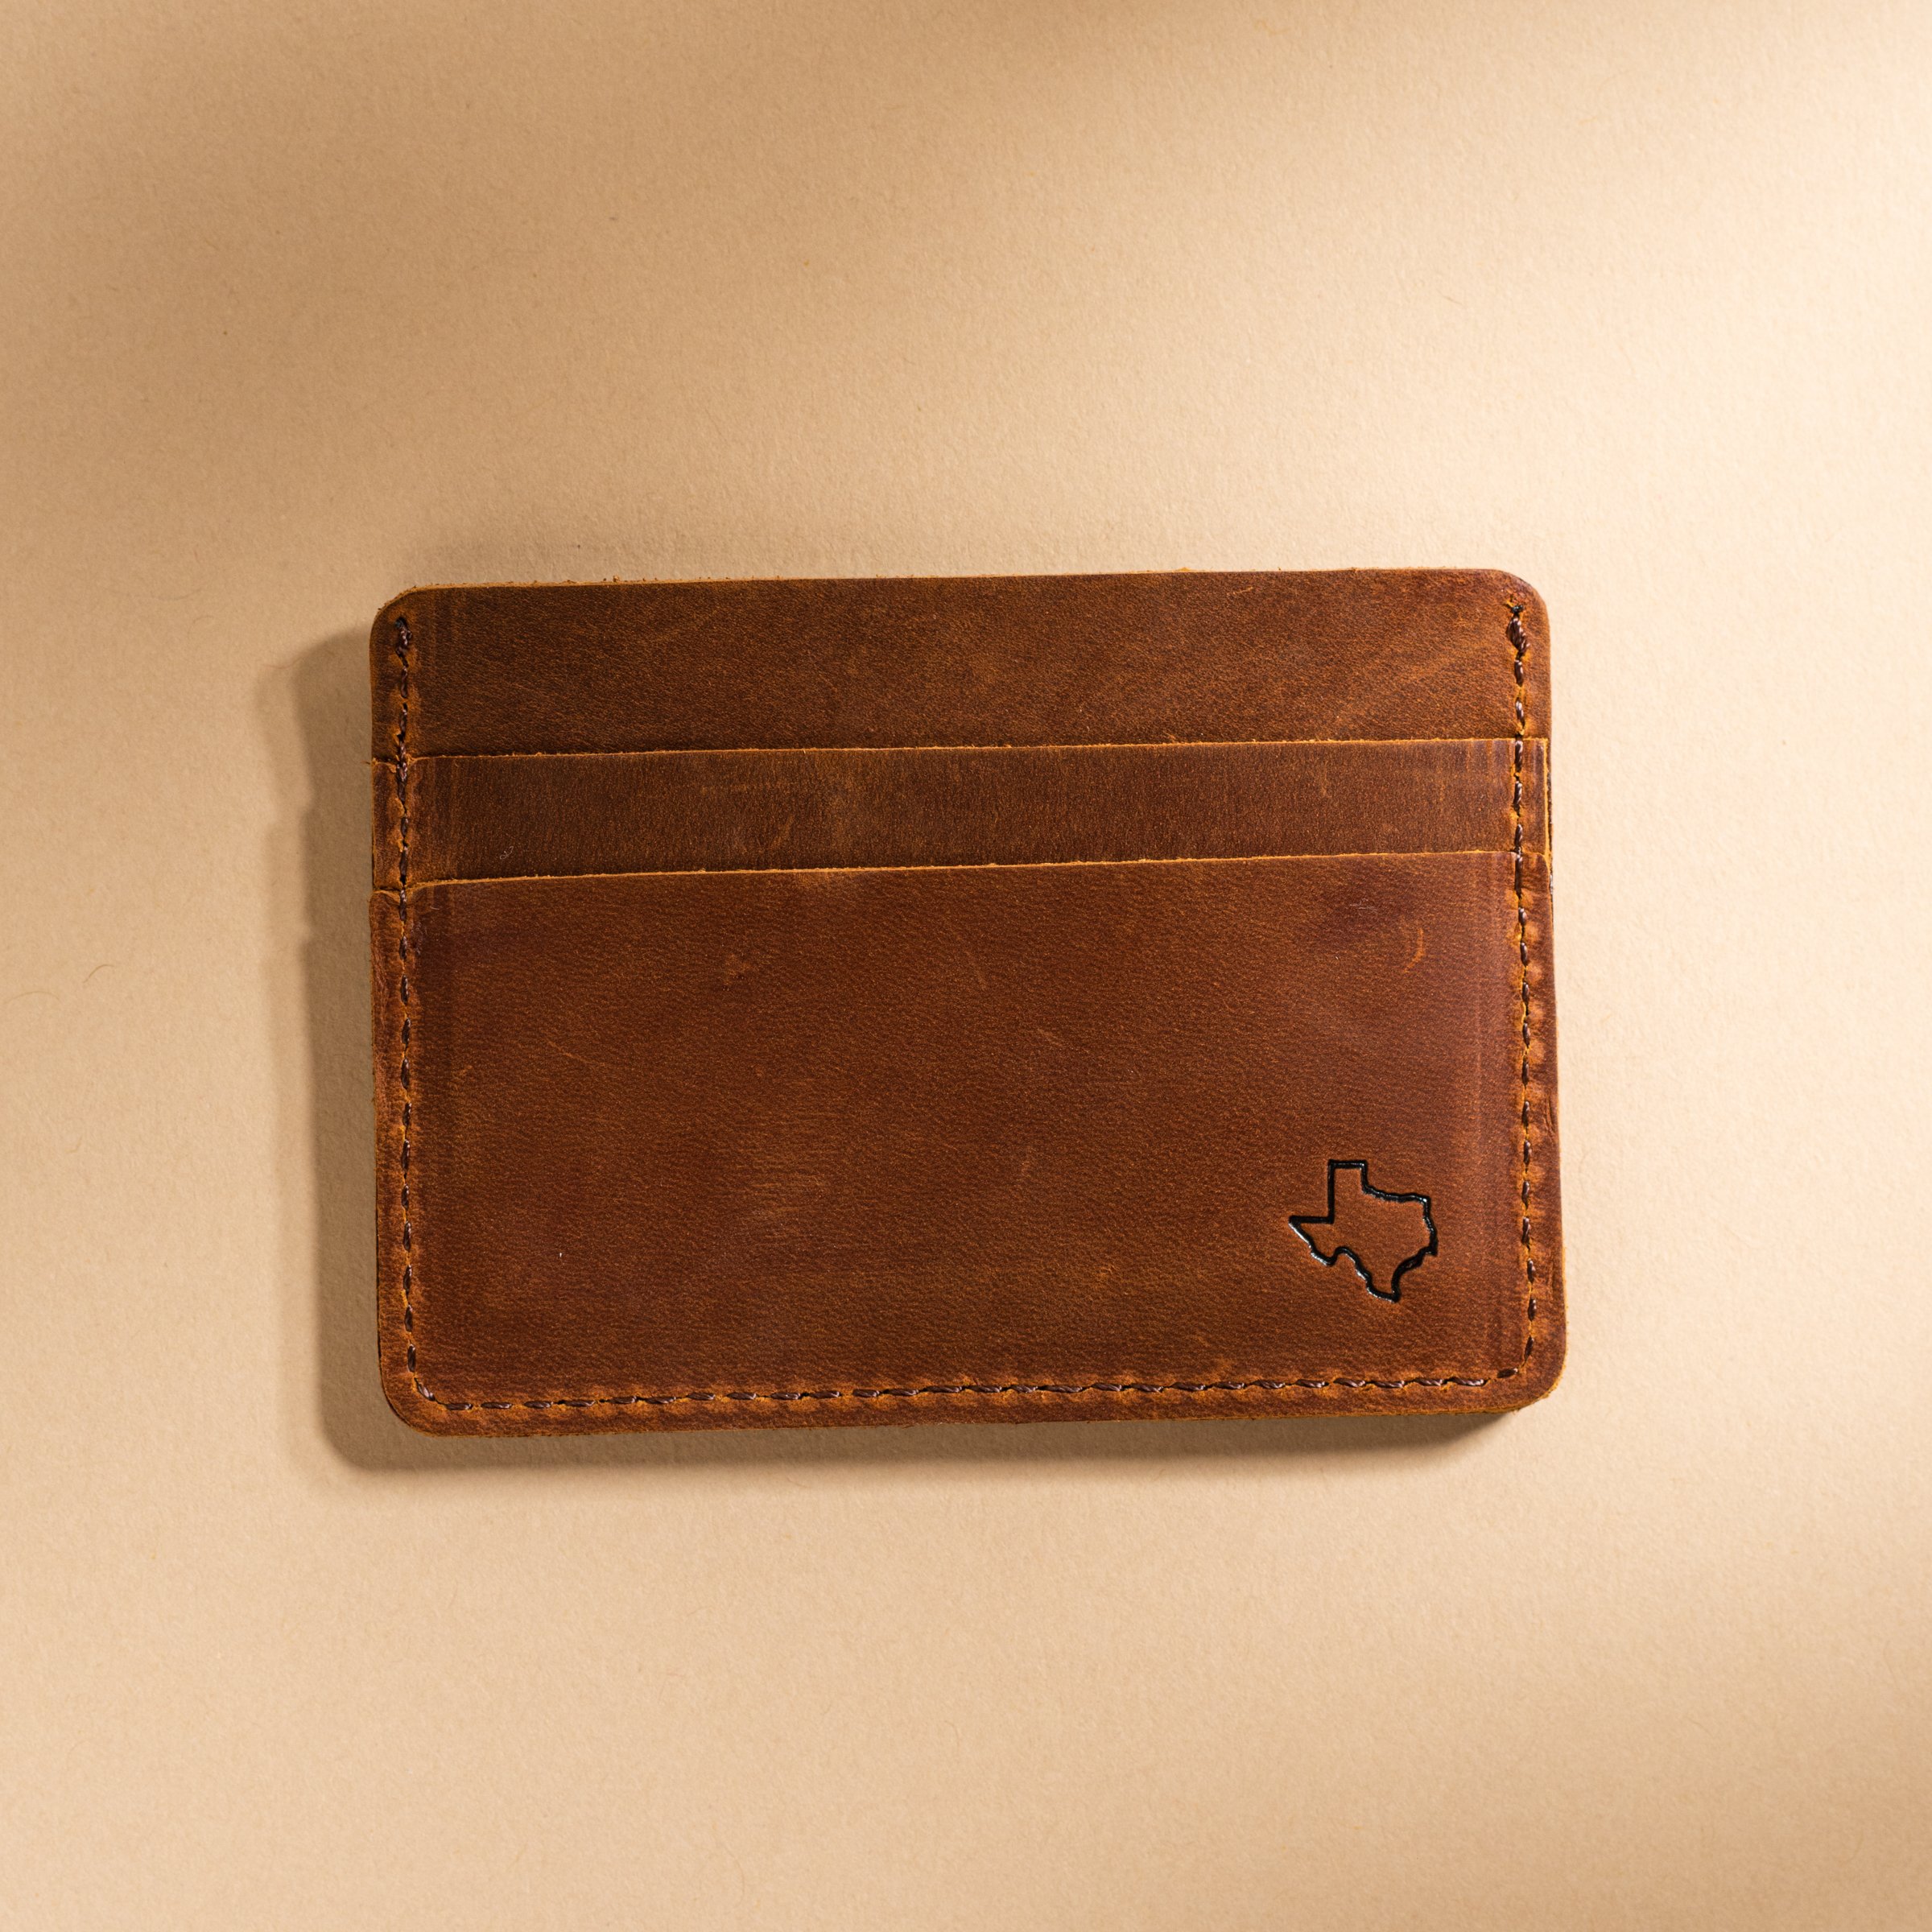 Full grain leather card holder